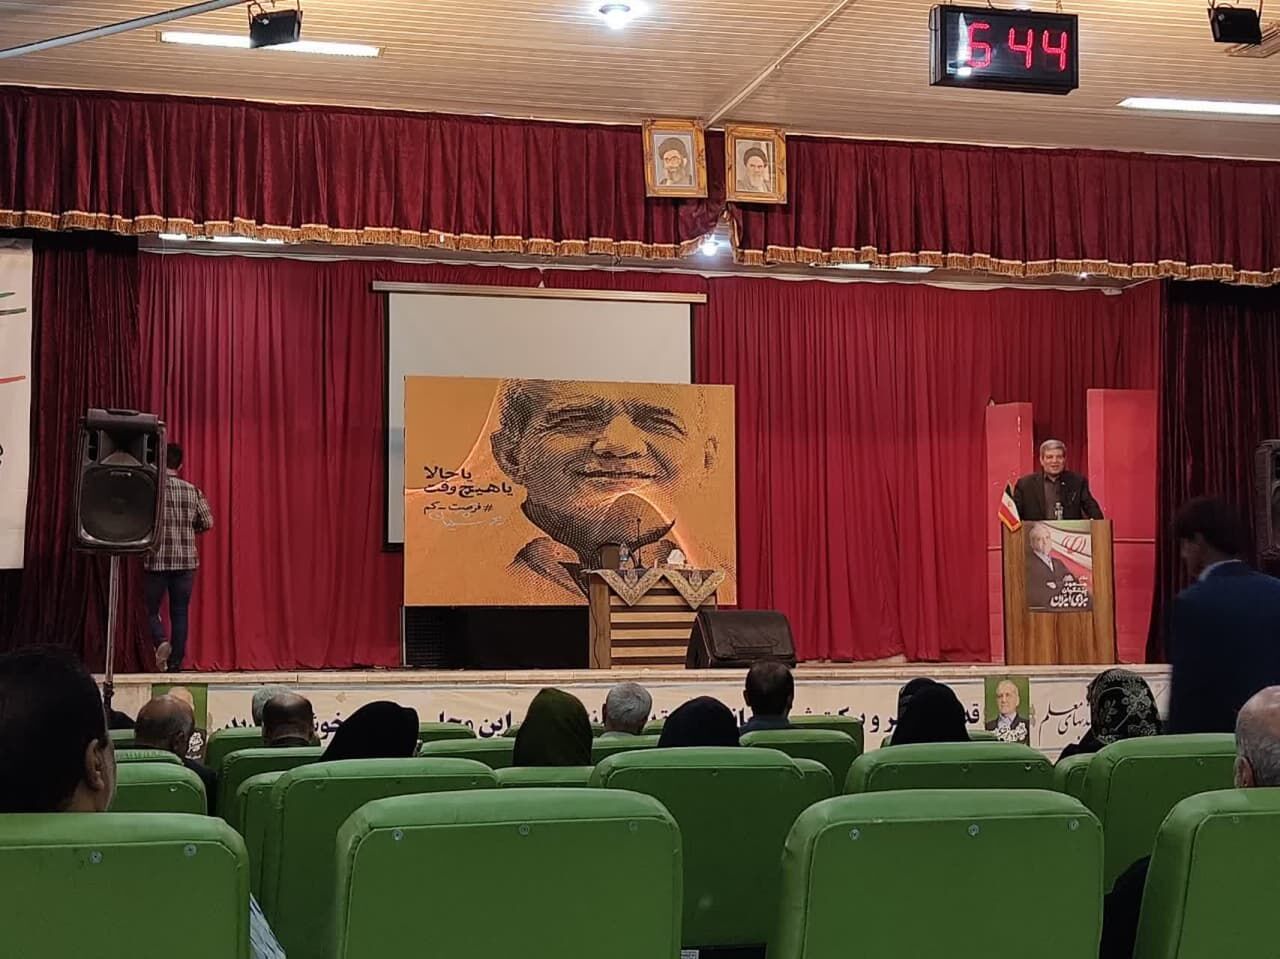 گردهمایی فرهنگیان حامی " پزشکیان " در یزد برگزار شد+ فیلم